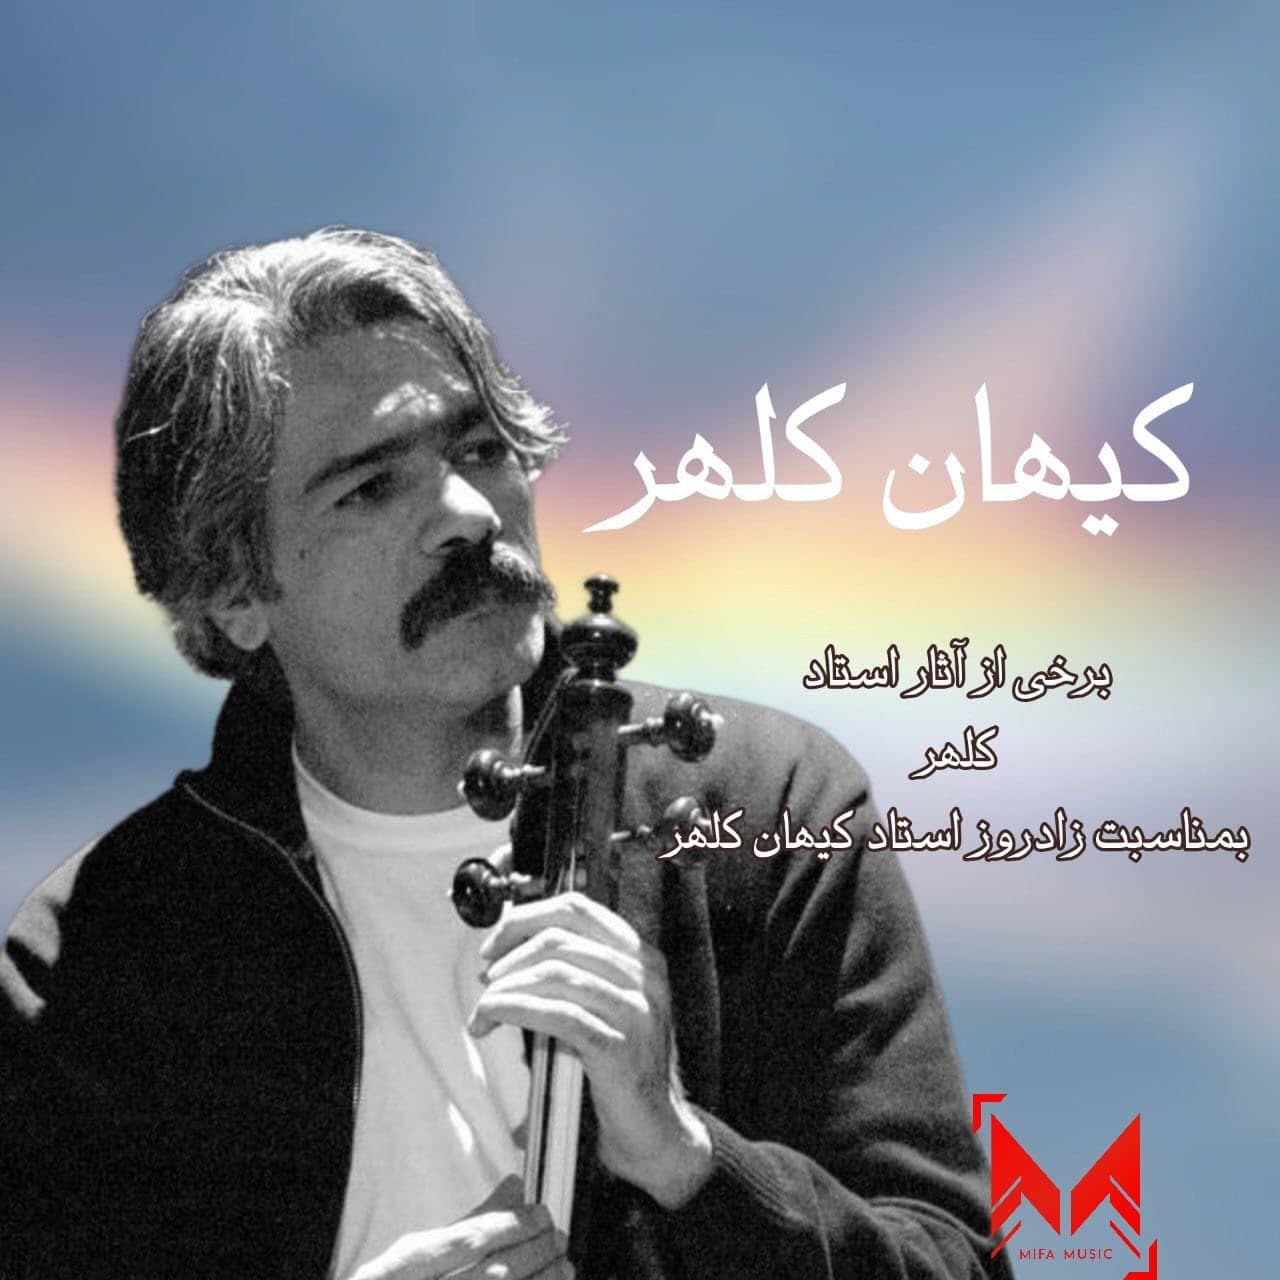 دانلود آهنگ کیهان کلهر 11 اواز دشتی سنتی ایرانی